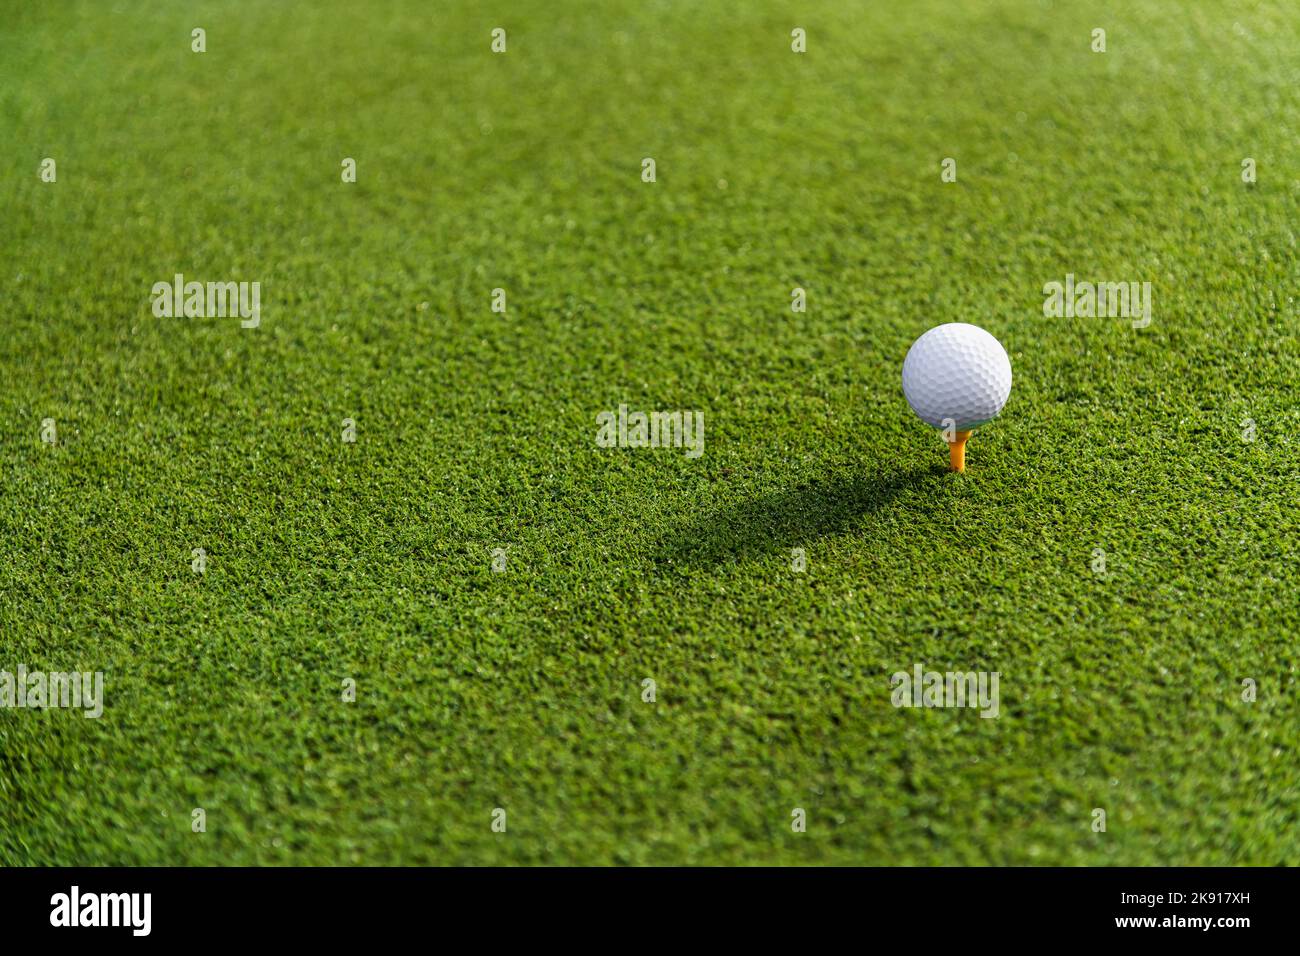 Minimalistischer, üppig grüner Goldgras-Golfplatz mit kleiner weißer Kugel auf dem Abschlag vor dem Abschlag Stockfoto